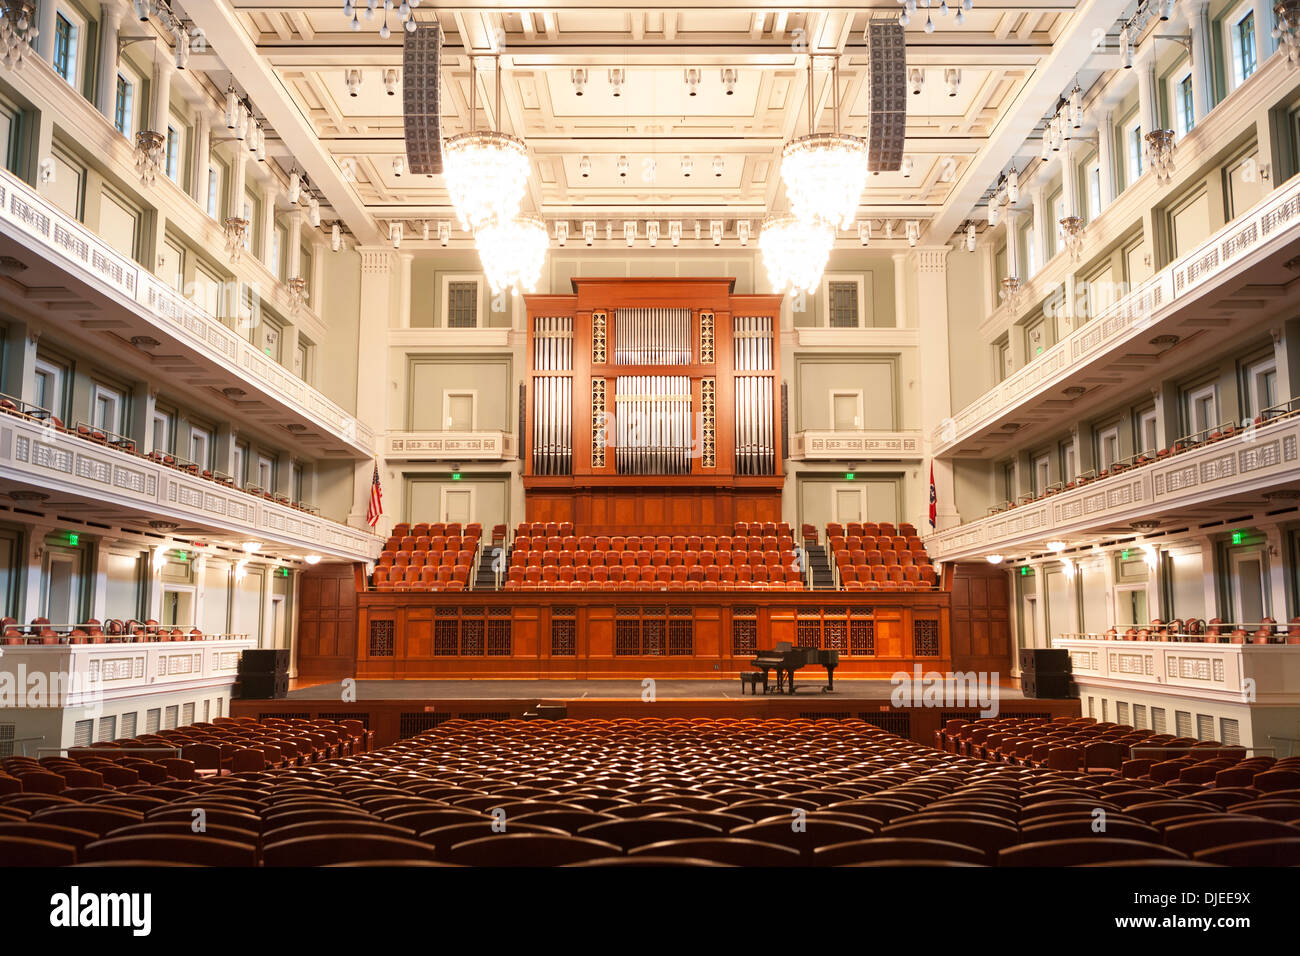 Le vide intérieur de la Schermerhorn Symphony Hall Nashville, TN Banque D'Images